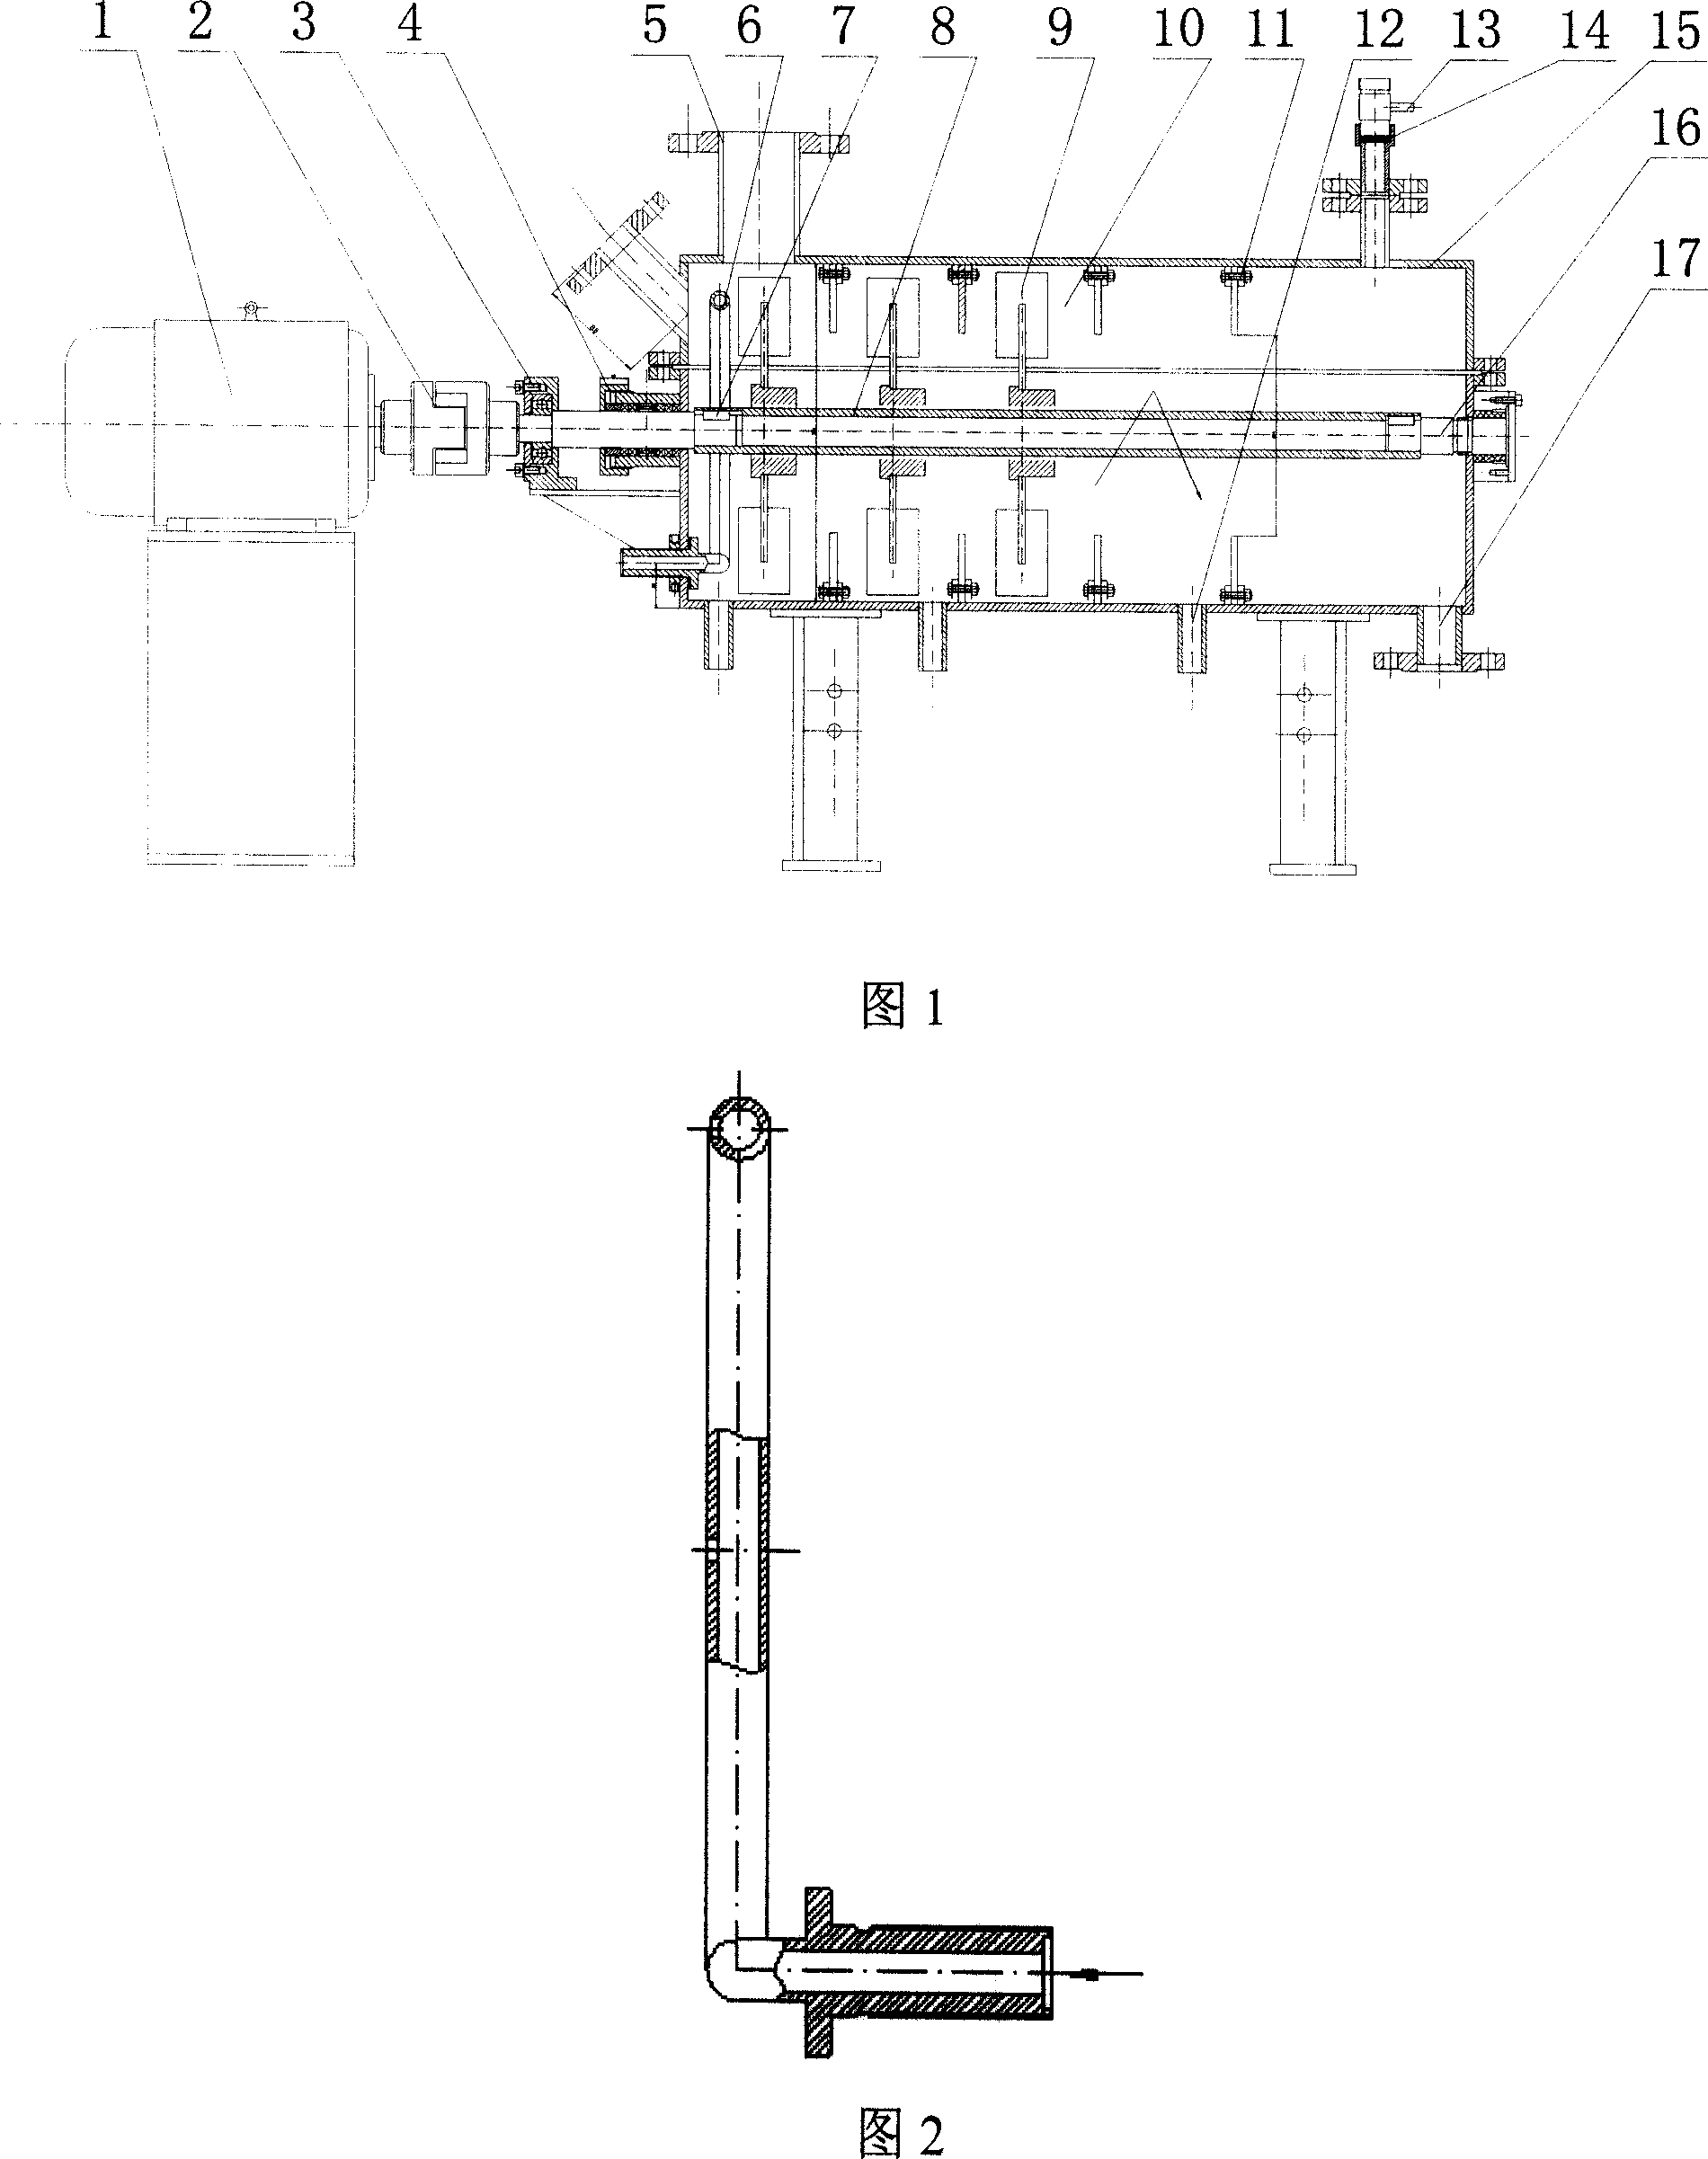 Horizontal solid-liquid mixer